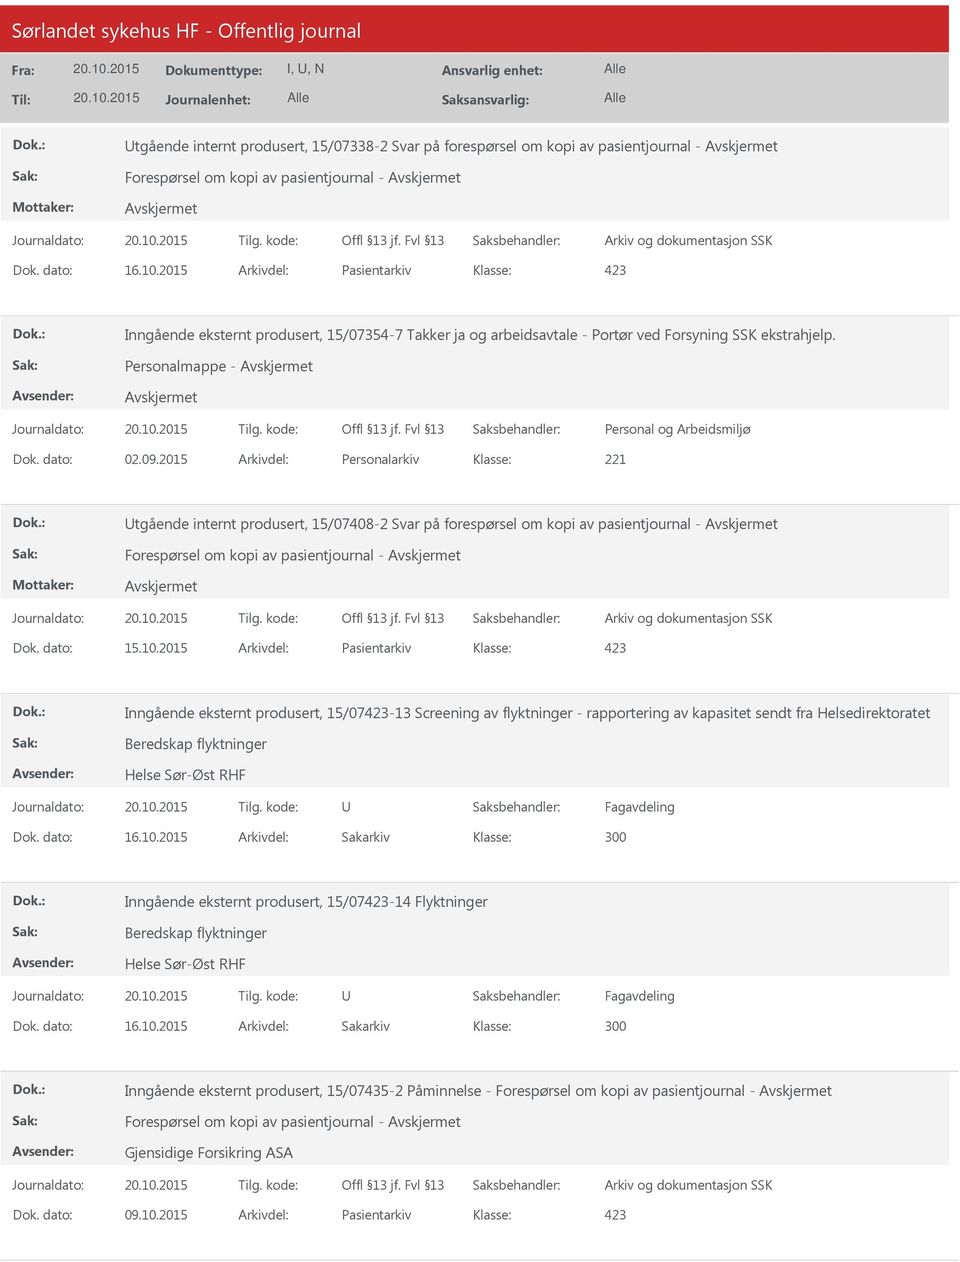 2015 Arkivdel: Personalarkiv tgående internt produsert, 15/07408-2 Svar på forespørsel om kopi av pasientjournal - Forespørsel om kopi av pasientjournal - Dok. dato: 15.10.